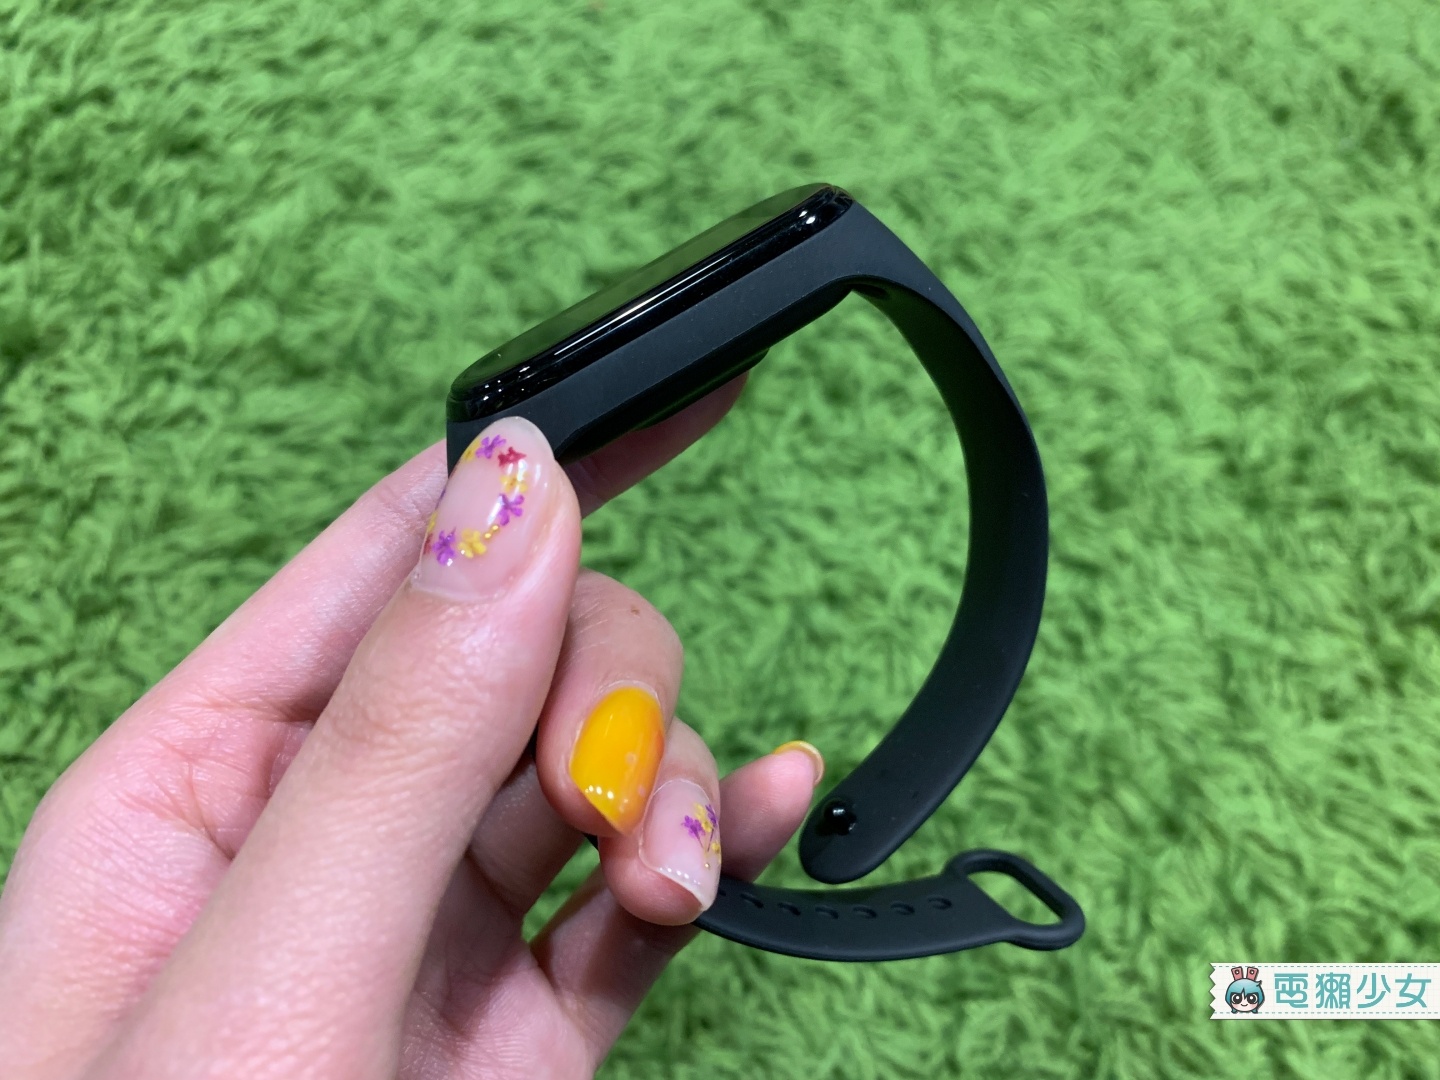 開箱 | 『 小米手環4 』彩色螢幕超討喜，游泳實測真的能幫你偵測泳姿！全新的遙控音樂功能用過更是超有感